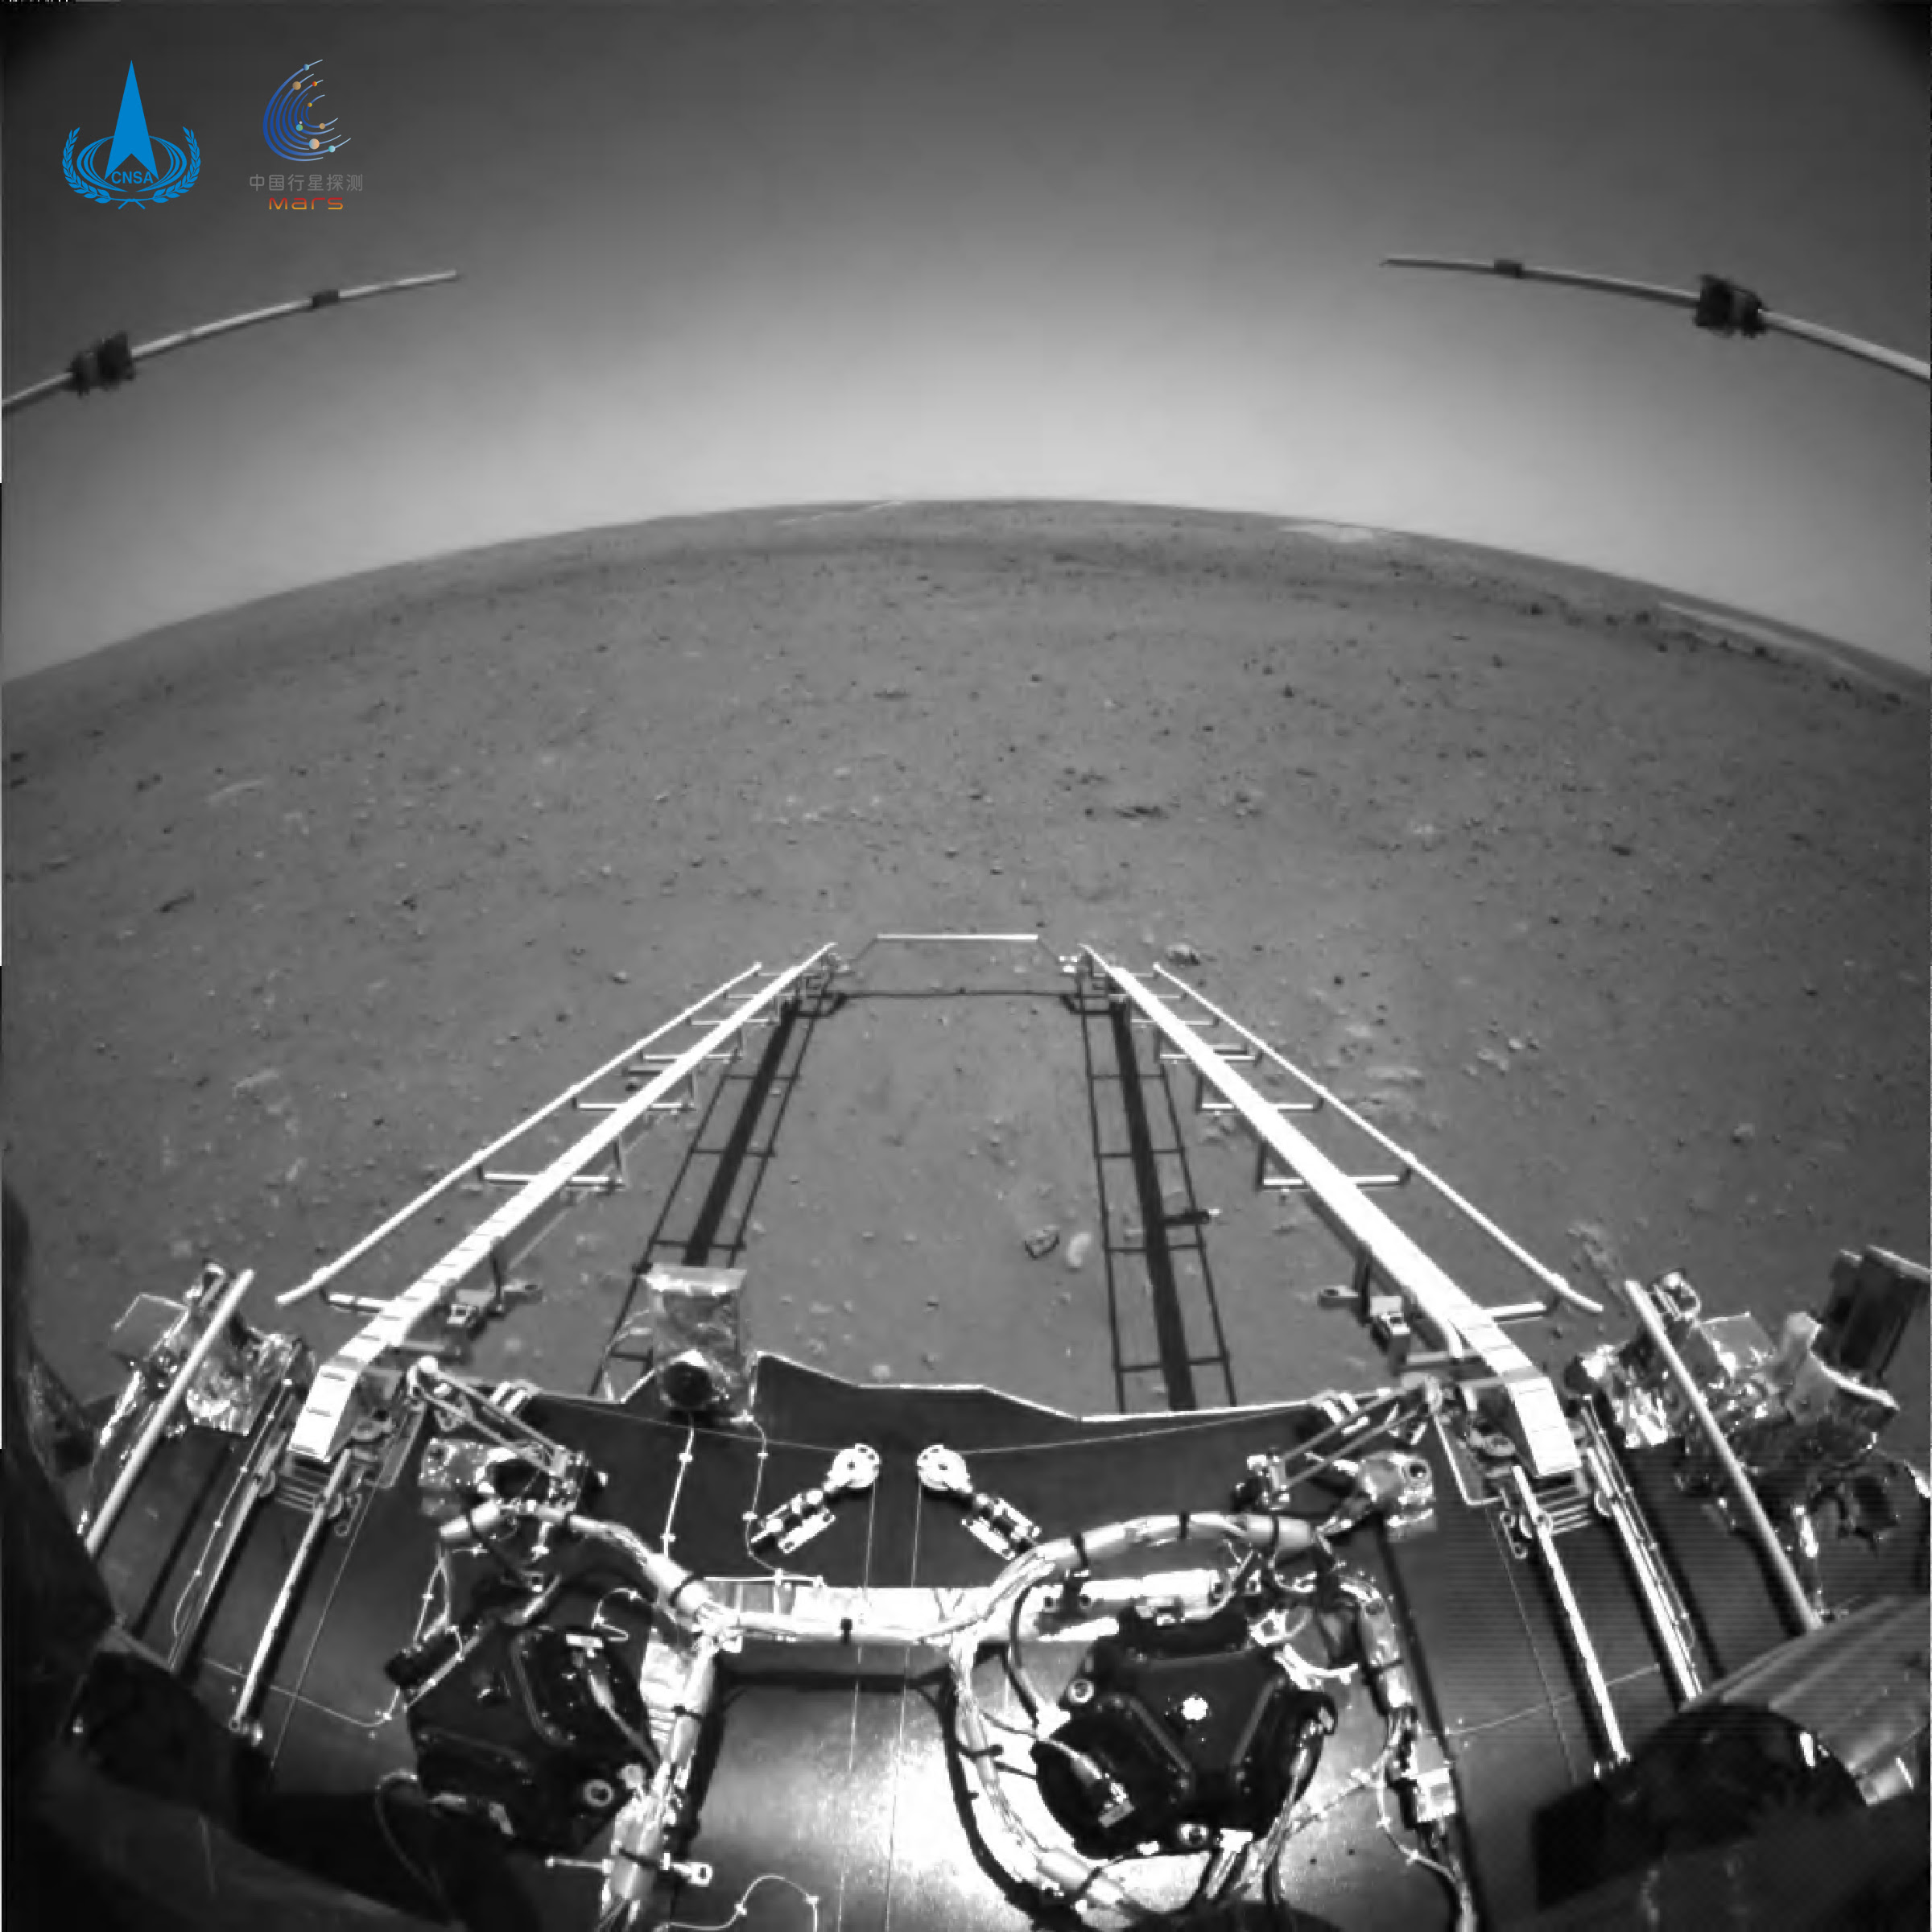 An image taken on Mars by China's Tianwen-1 lander